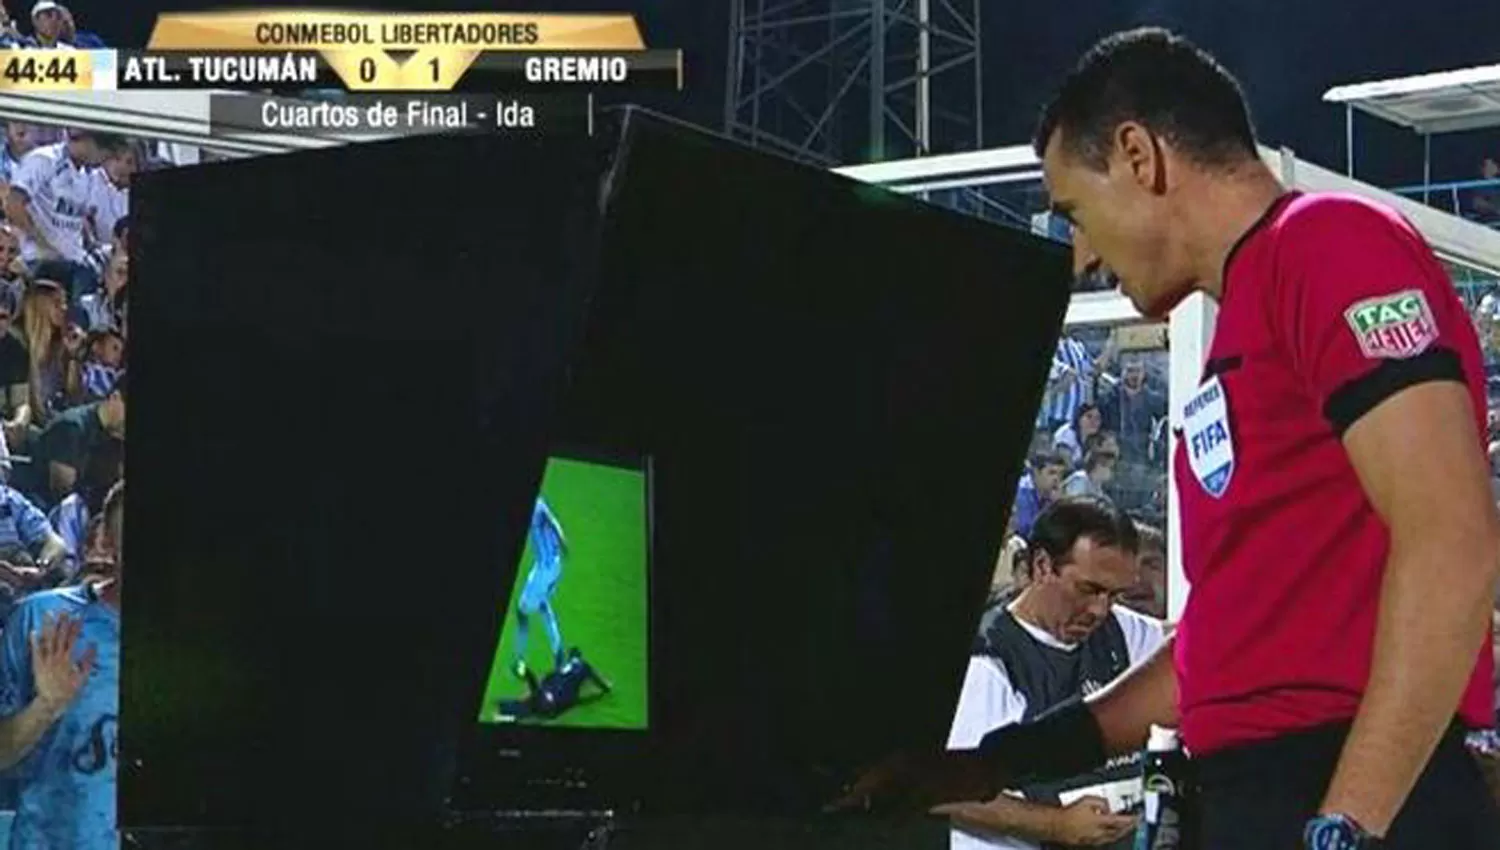 LA PRIMERA. En Tucumán el sistema de video arbitraje (VAR) se utilizó durante la participación de Atlético en la Libertadores 2018.